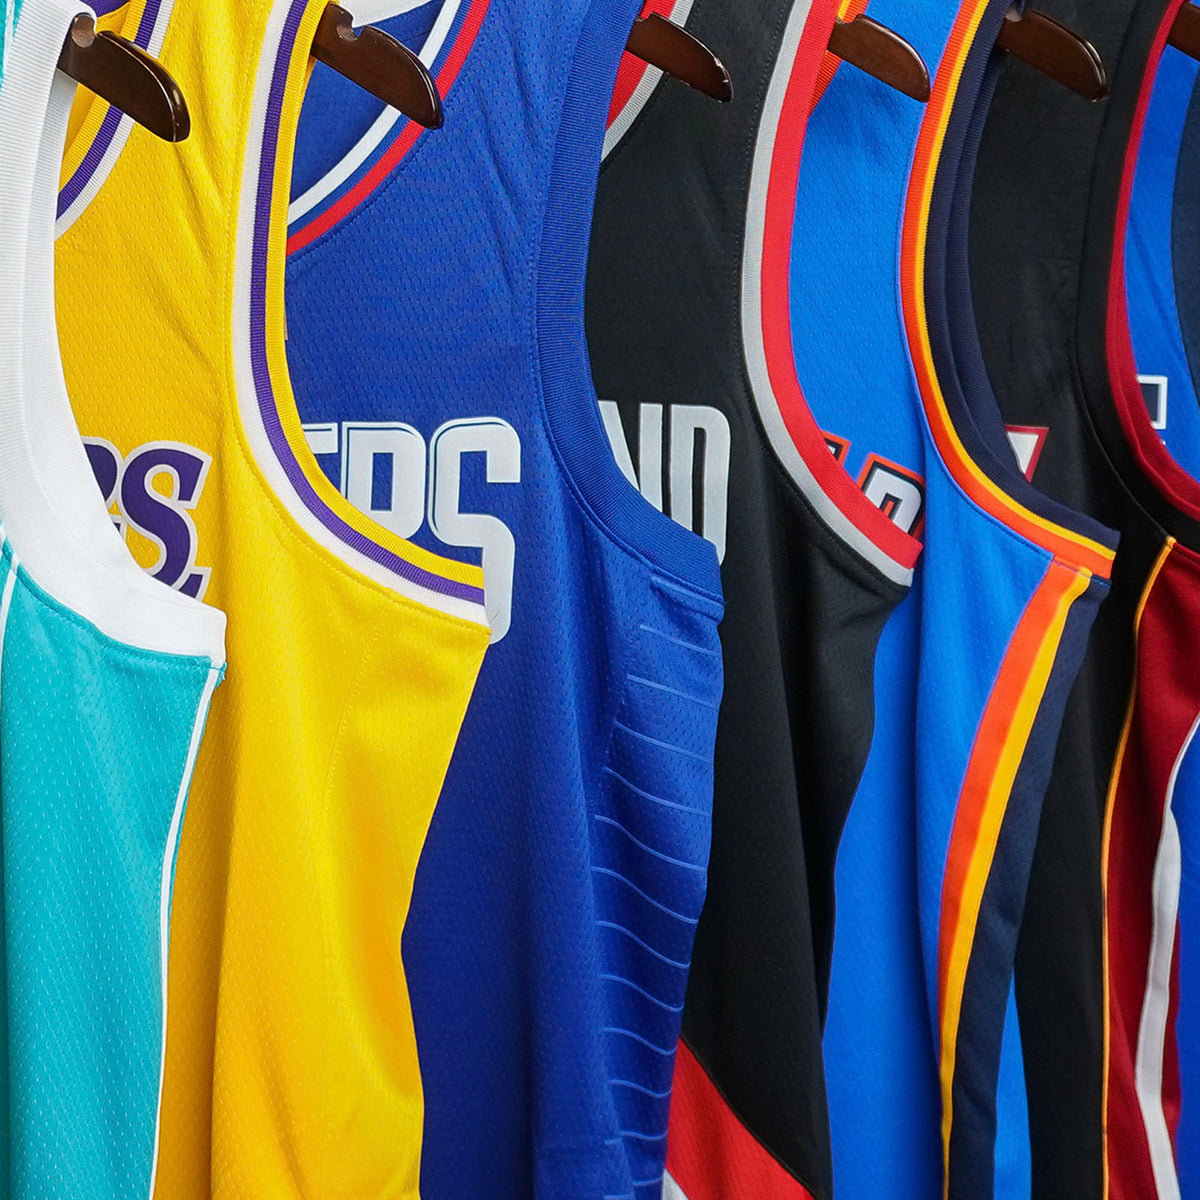 100 Best NBA Jerseys ideas